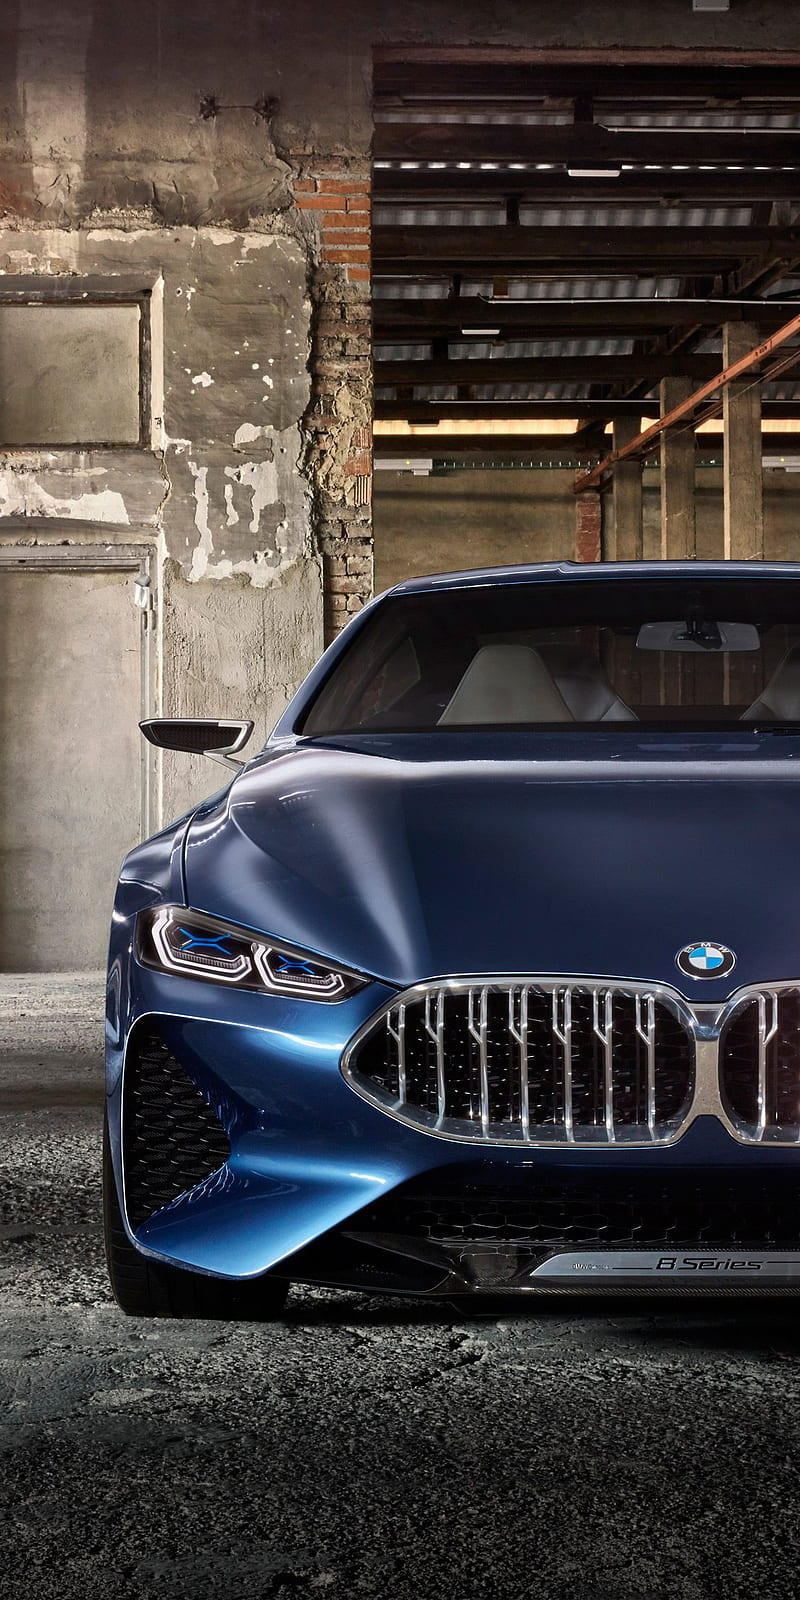 BMW 8 Series - Những hình ảnh đẹp nhất về dòng xe sang trọng này đang chờ bạn khám phá. Với đường nét thiết kế tinh tế và cảm giác lái thoải mái, BMW 8 Series là một trong những dòng xe được ưa chuộng nhất trên thị trường hiện nay. Chỉ cần một cái nhìn, bạn sẽ nhận ra sự sang trọng và đẳng cấp của dòng xe này.